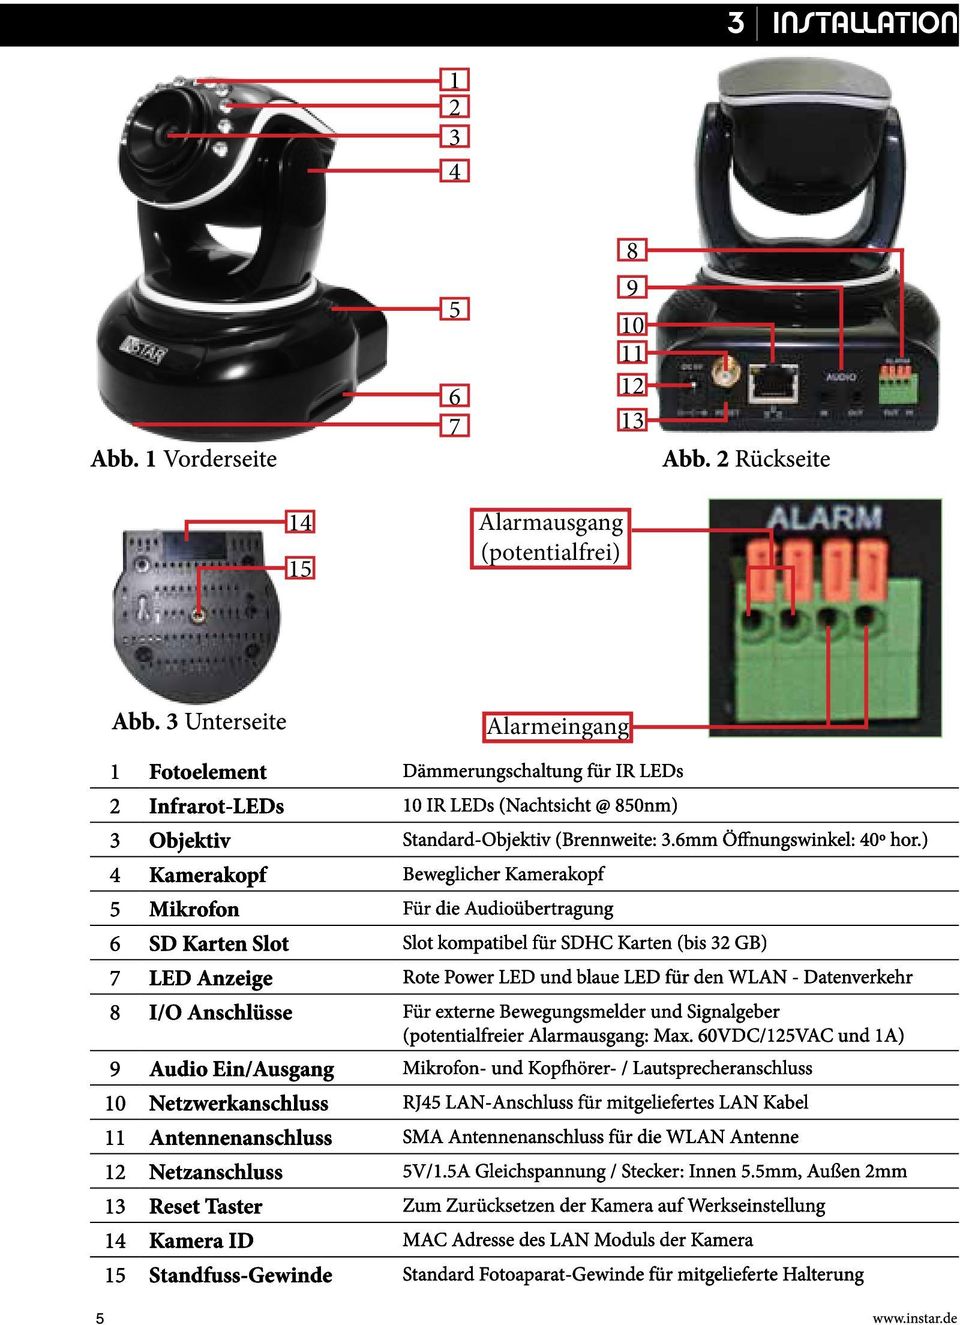 ) 4 Kamerakopf Beweglicher Kamerakopf 5 Mikrofon Für die Audioübertragung 6 SD Karten Slot Slot kompatibel für SDHC Karten (bis 32 GB) 7 LED Anzeige Rote Power LED und blaue LED für den WLAN -